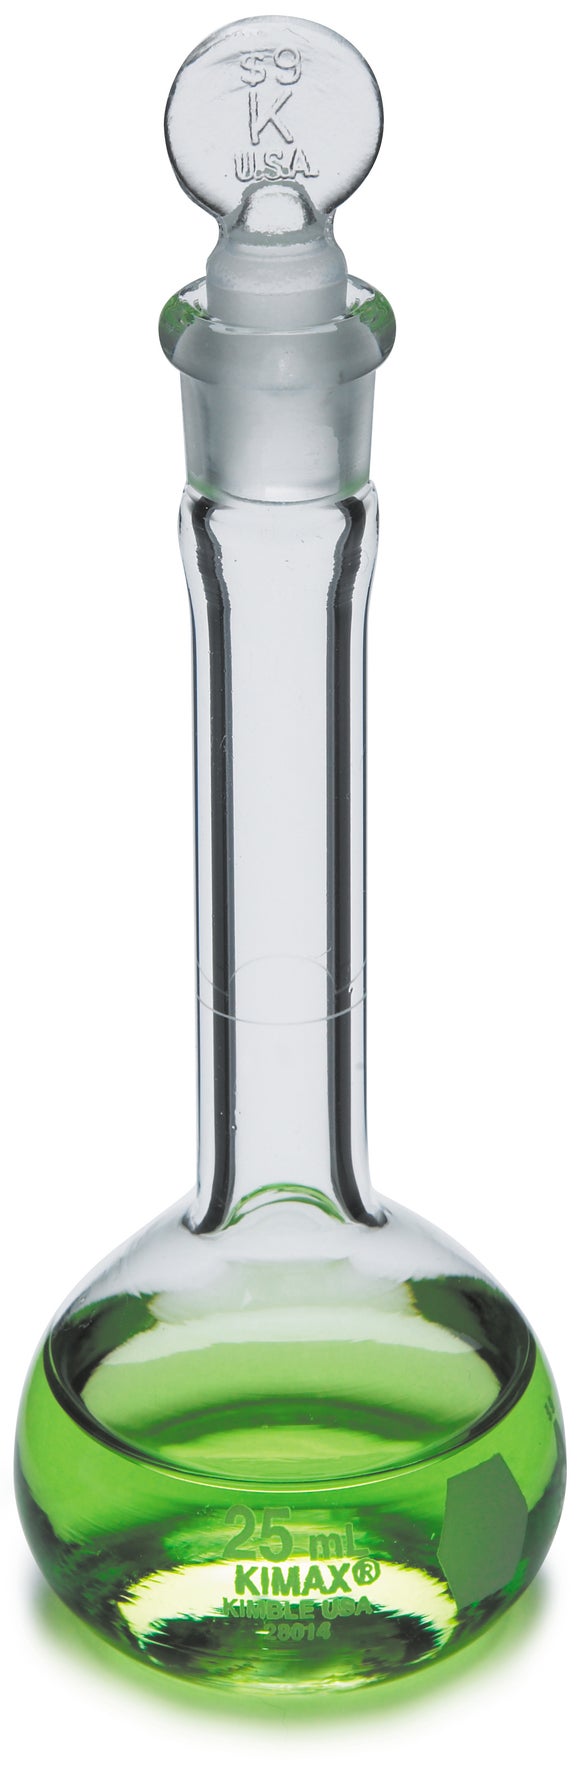 Flask, volumetric class A, glass, 500 mL